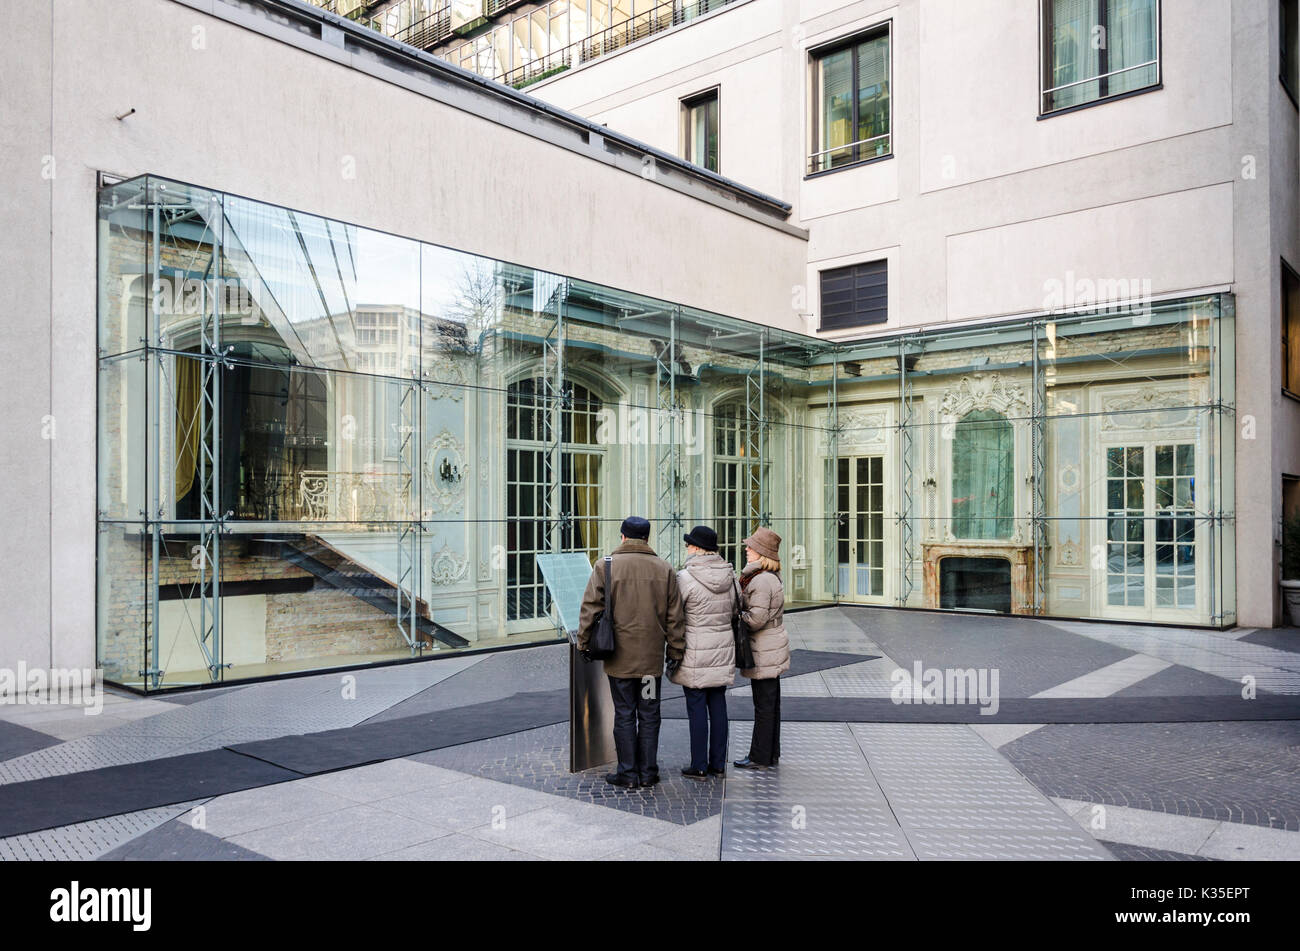 Les touristes à la recherche de plâtre intérieur préservé à l'Hôtel Esplanade salle de bal à la Potsdamer Platz, Berlin, Allemagne Banque D'Images